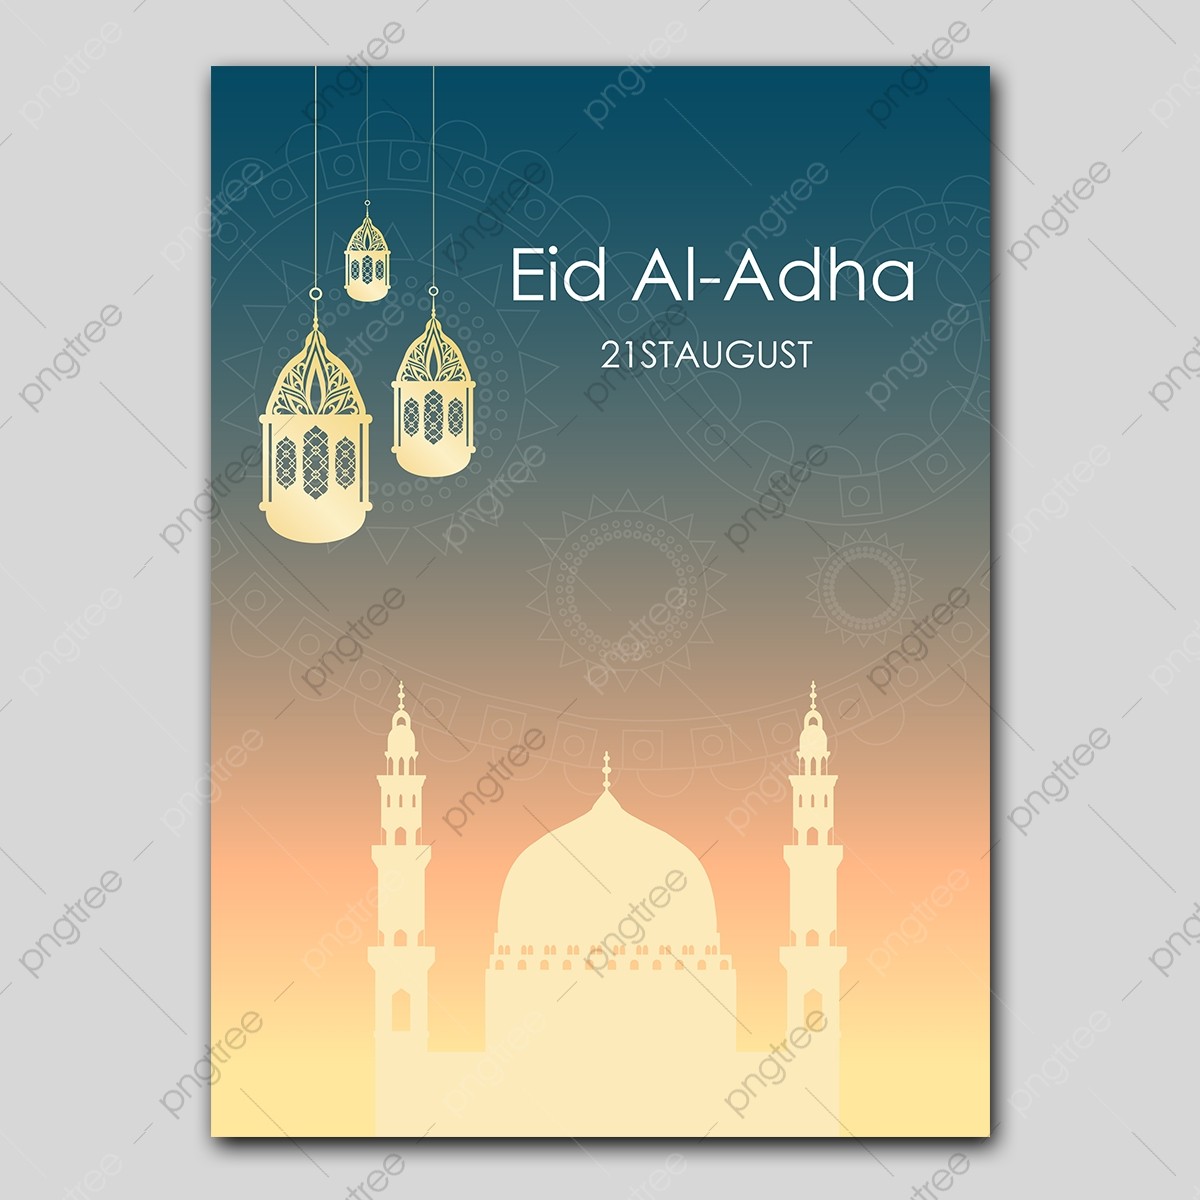 pngtree-eid-al-adha-poster-design-png-image_3594610.jpg